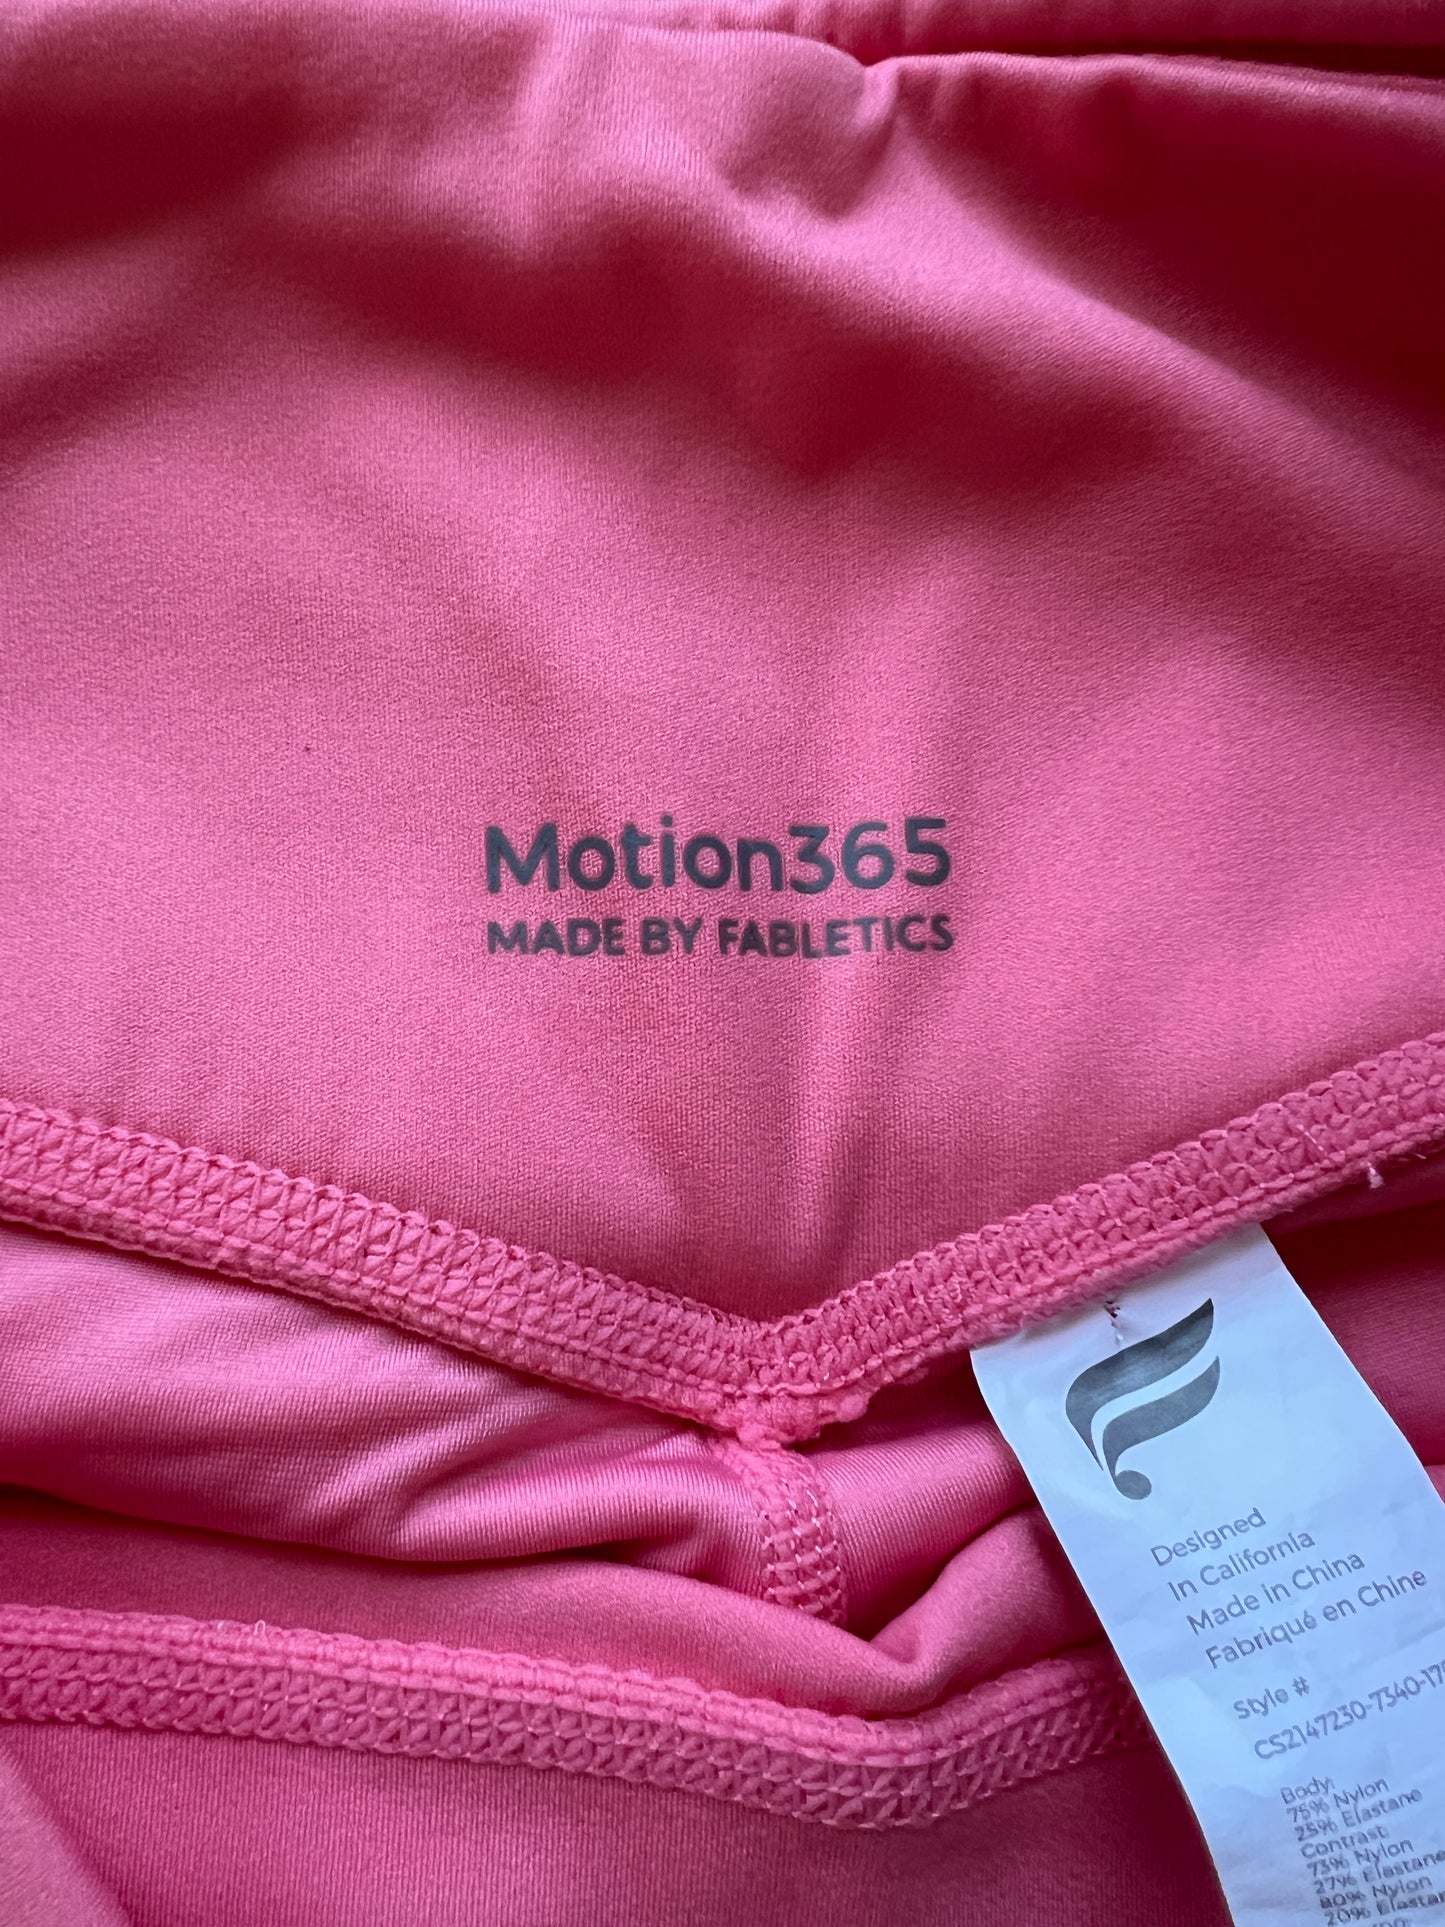 Fabletics Motion 365 Women's size L 7/8 Legging